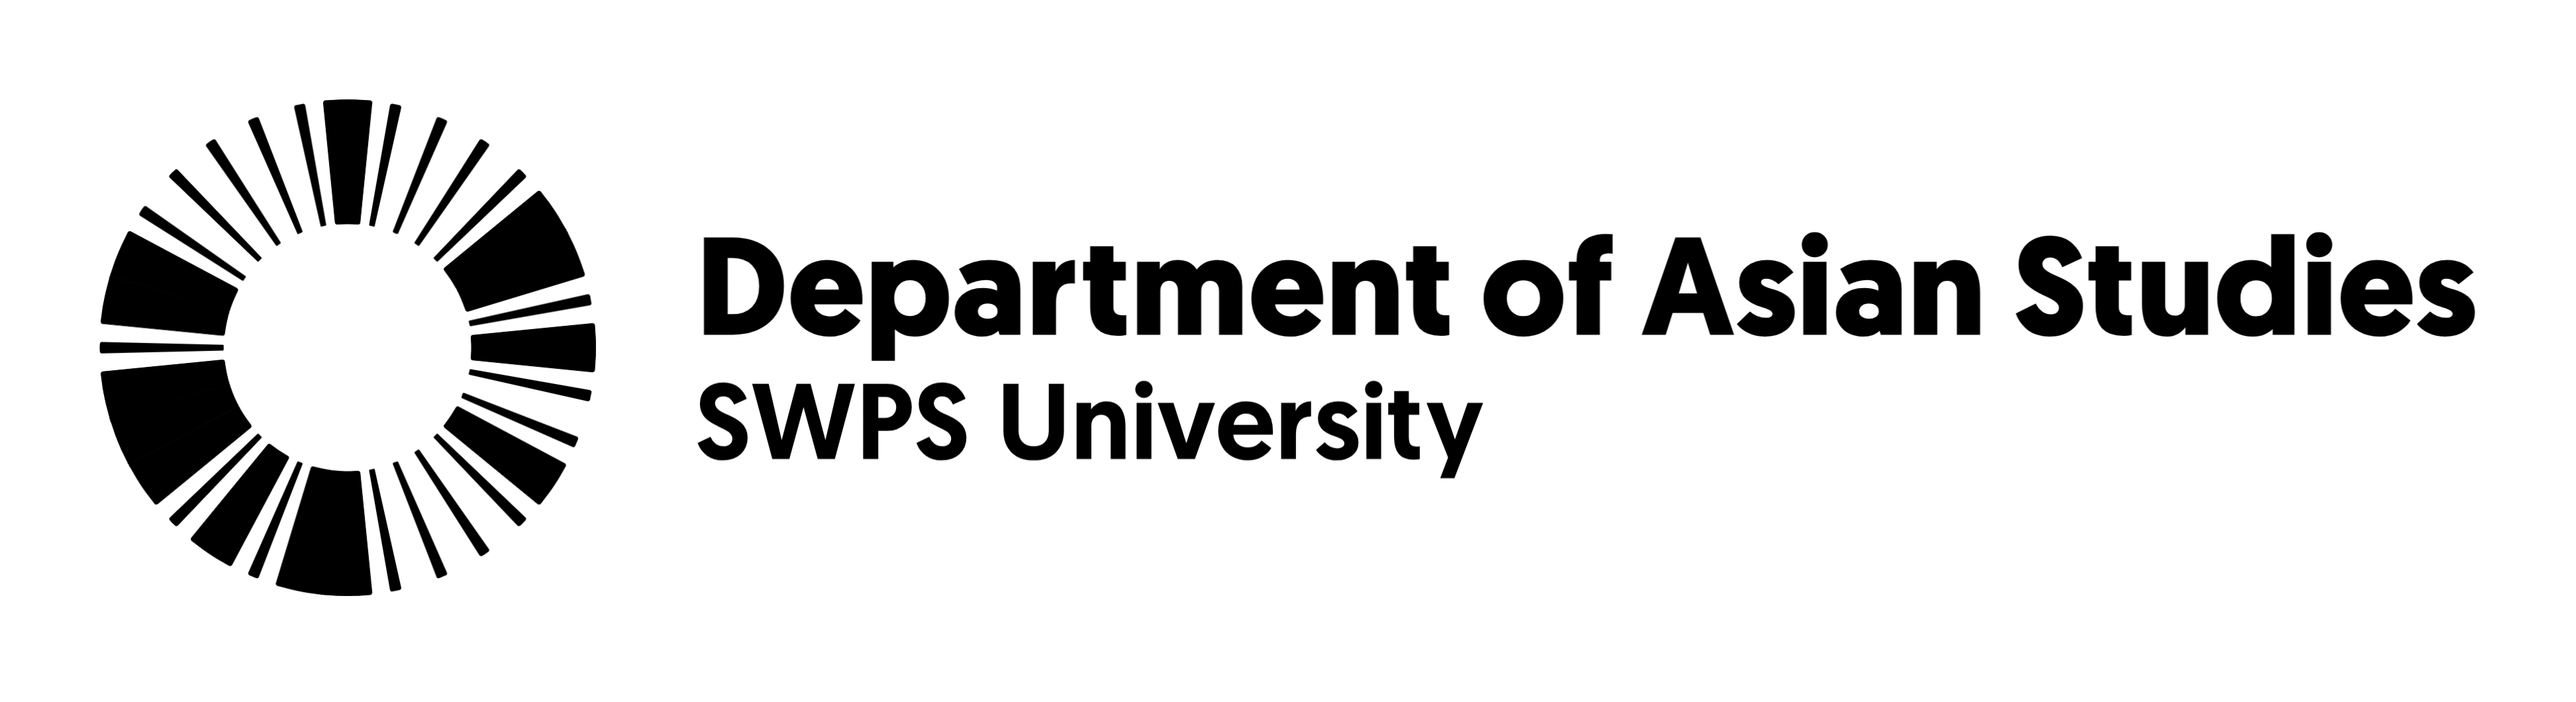 Logo of SWPS University's Department of Asian Studies